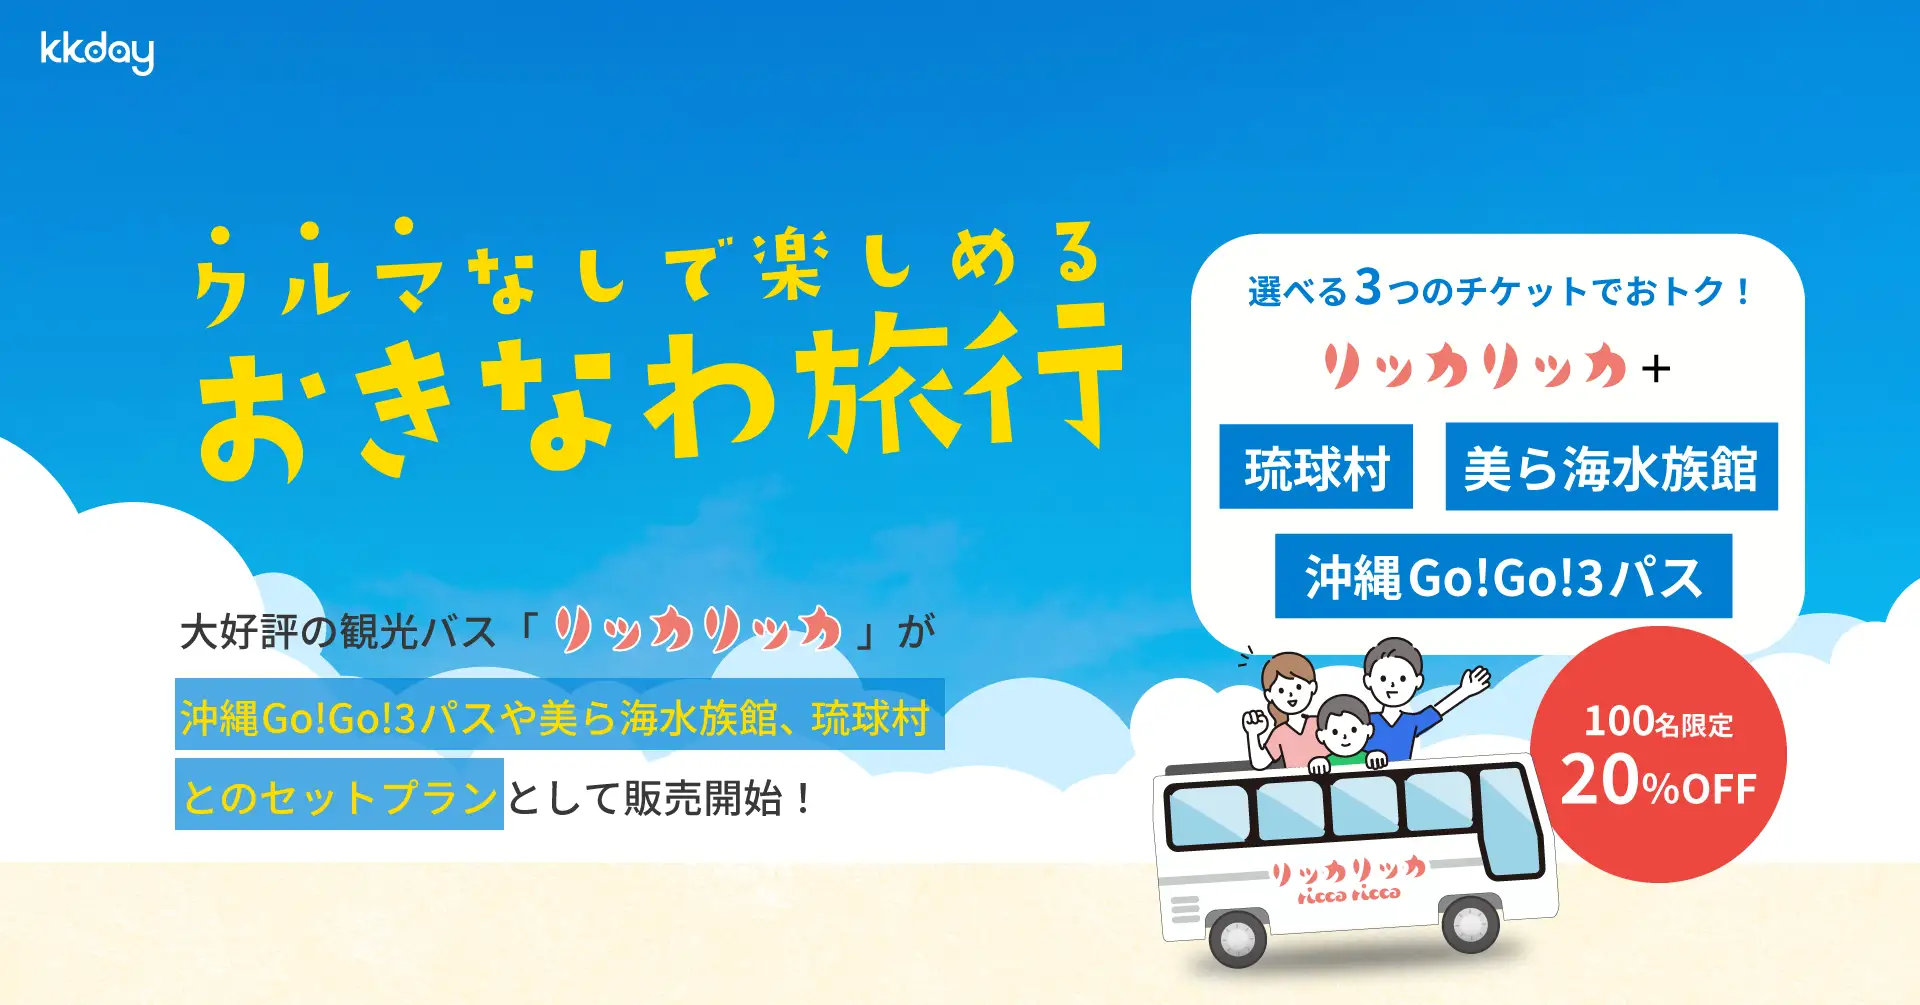 沖縄タイムスにて、KKdayとActivity Japanが運行するリッカリッカバスが記事になりました